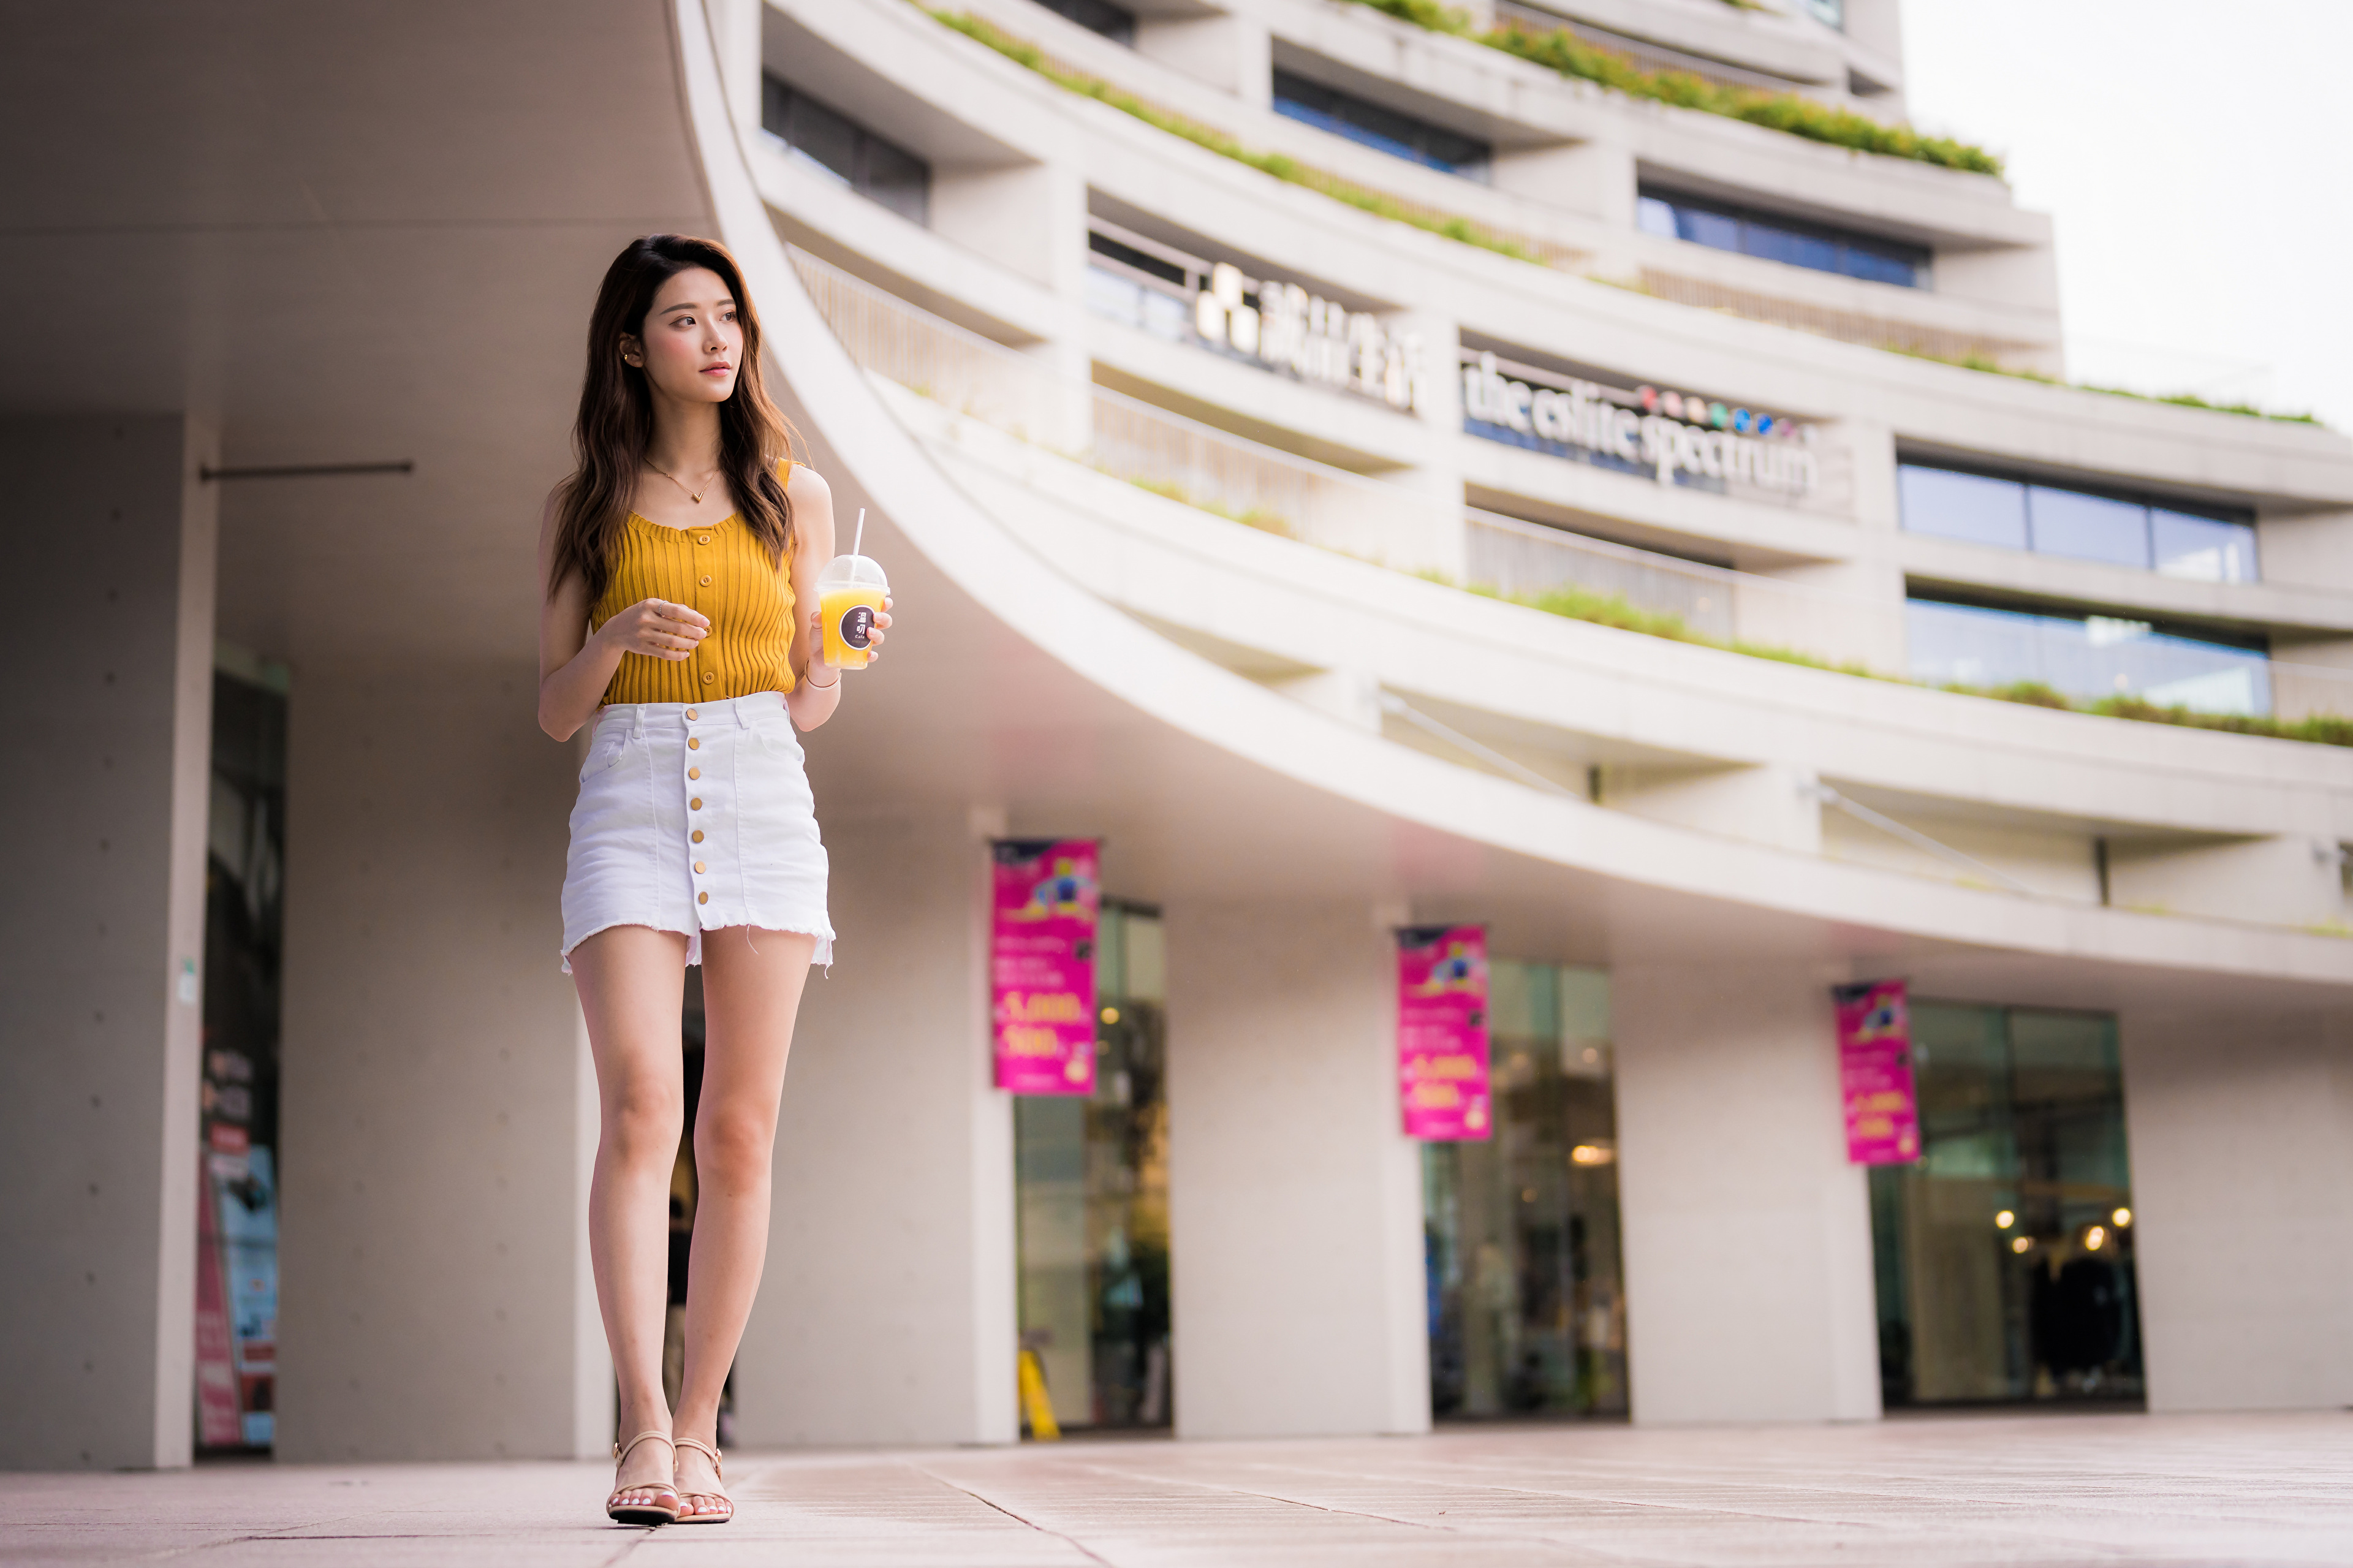 Asian Model Women Long Hair Brunette White Skirt Yellow Shirt Barefoot Sandal Building Walking Juice 3840x2559